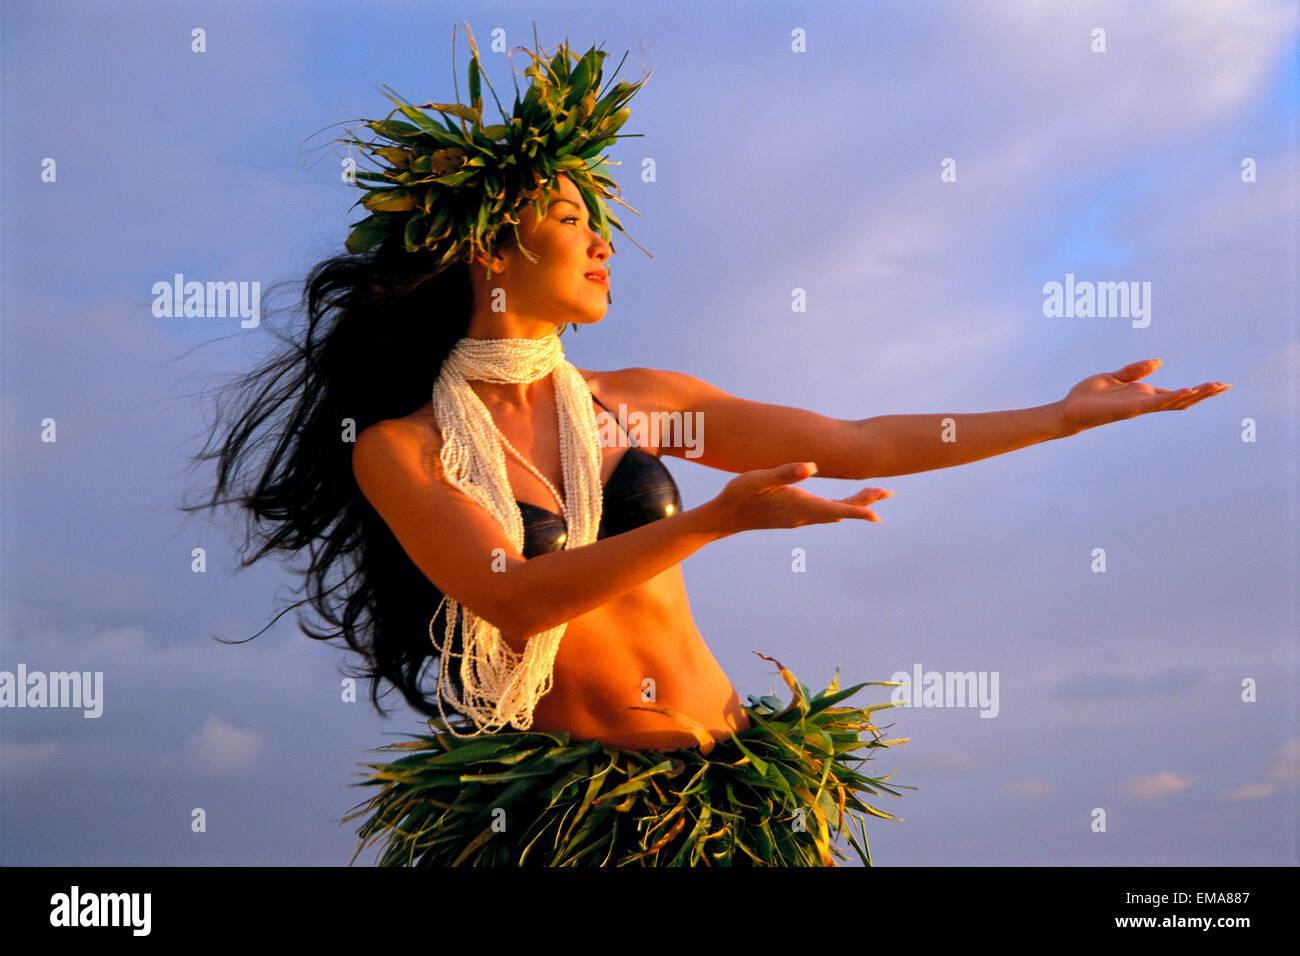 Pin by KUKAI on HULA  Hawaiian woman, Hawaiian dancers, Hawaiian hula dance